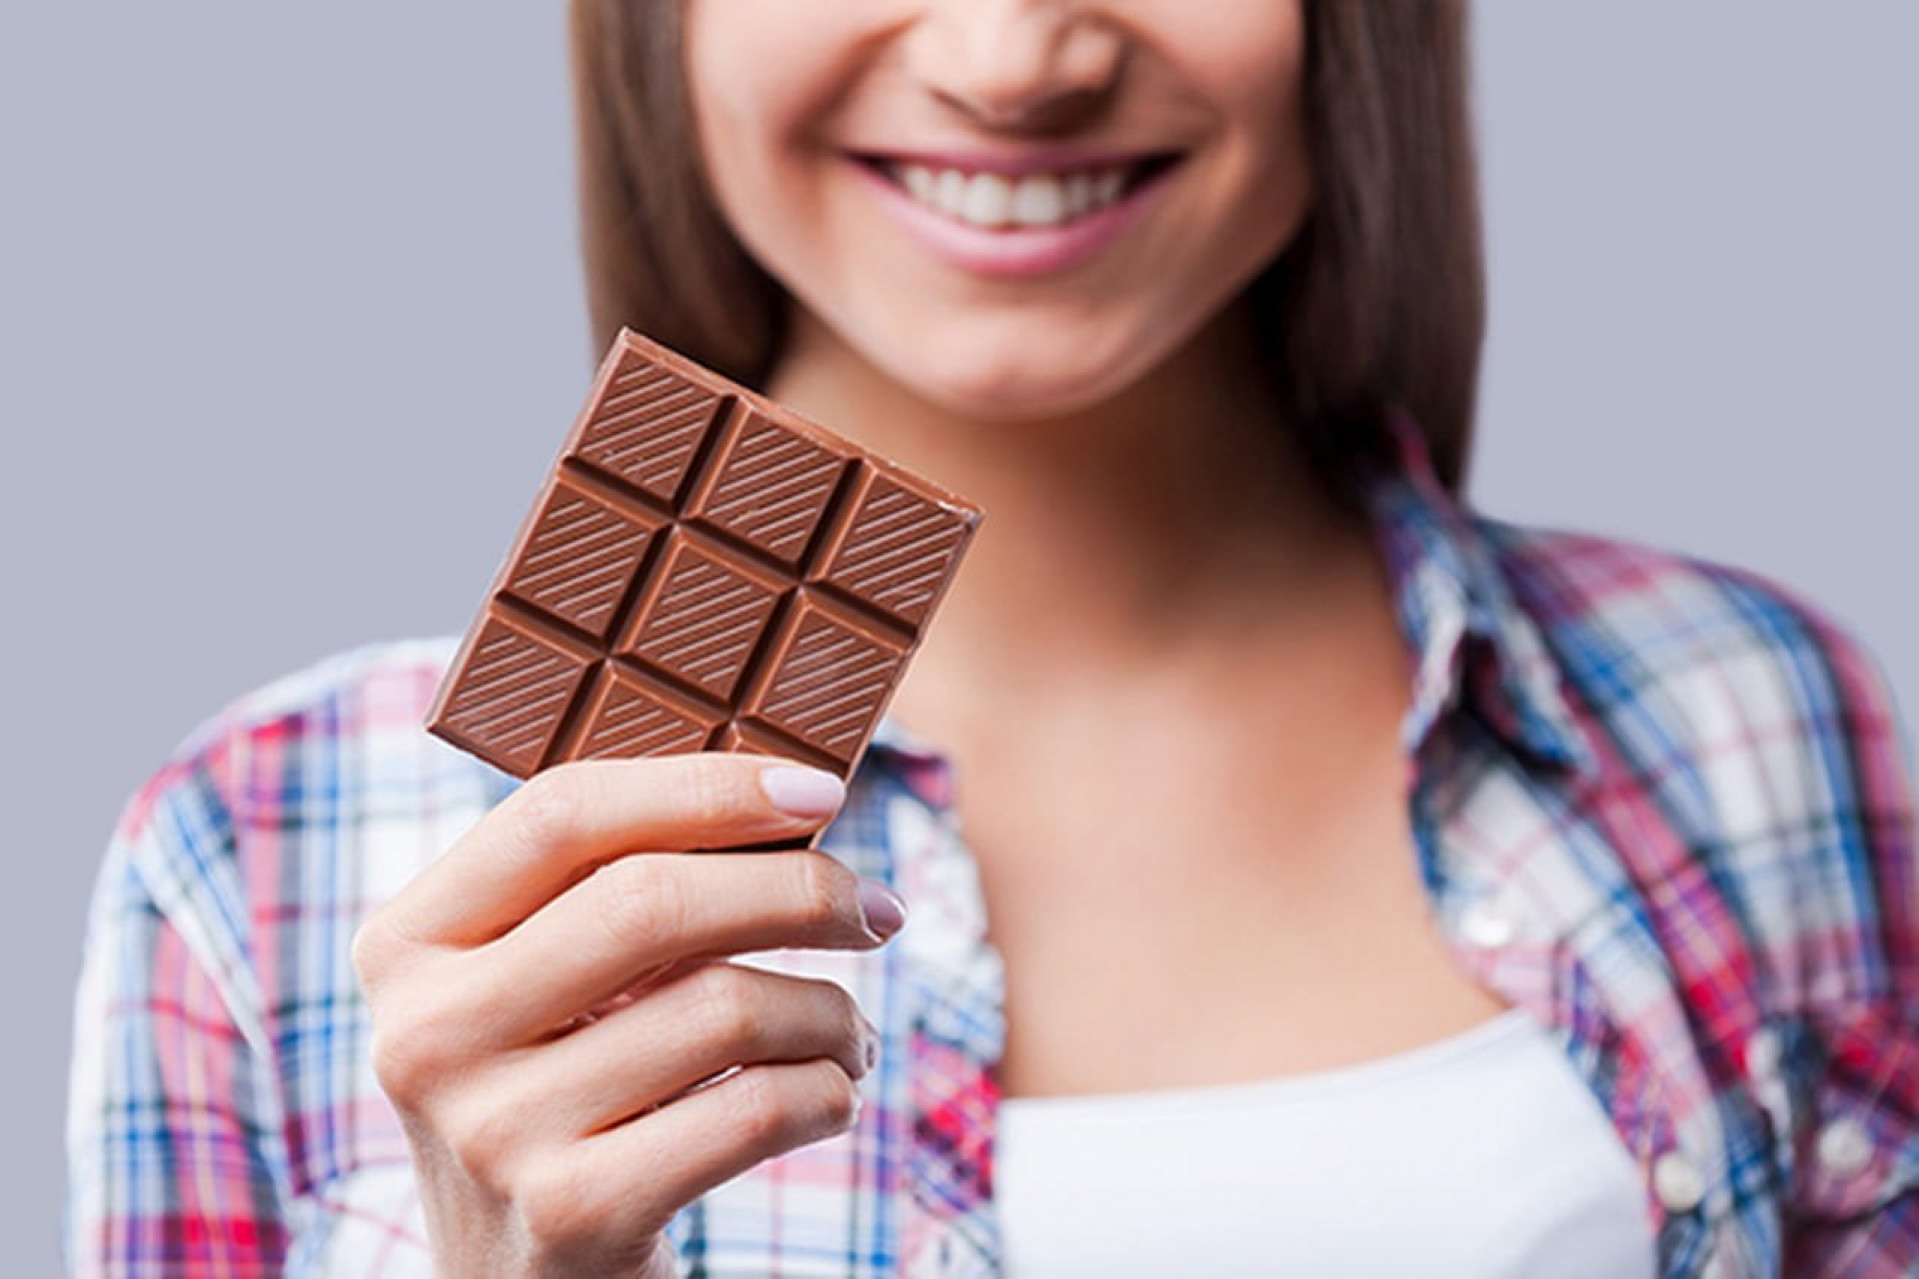 Сколько лет шоколадке. Необычный шоколад. Плитка шоколада в руке. Шоколадка в руке. Шоколадка в руке девушки.